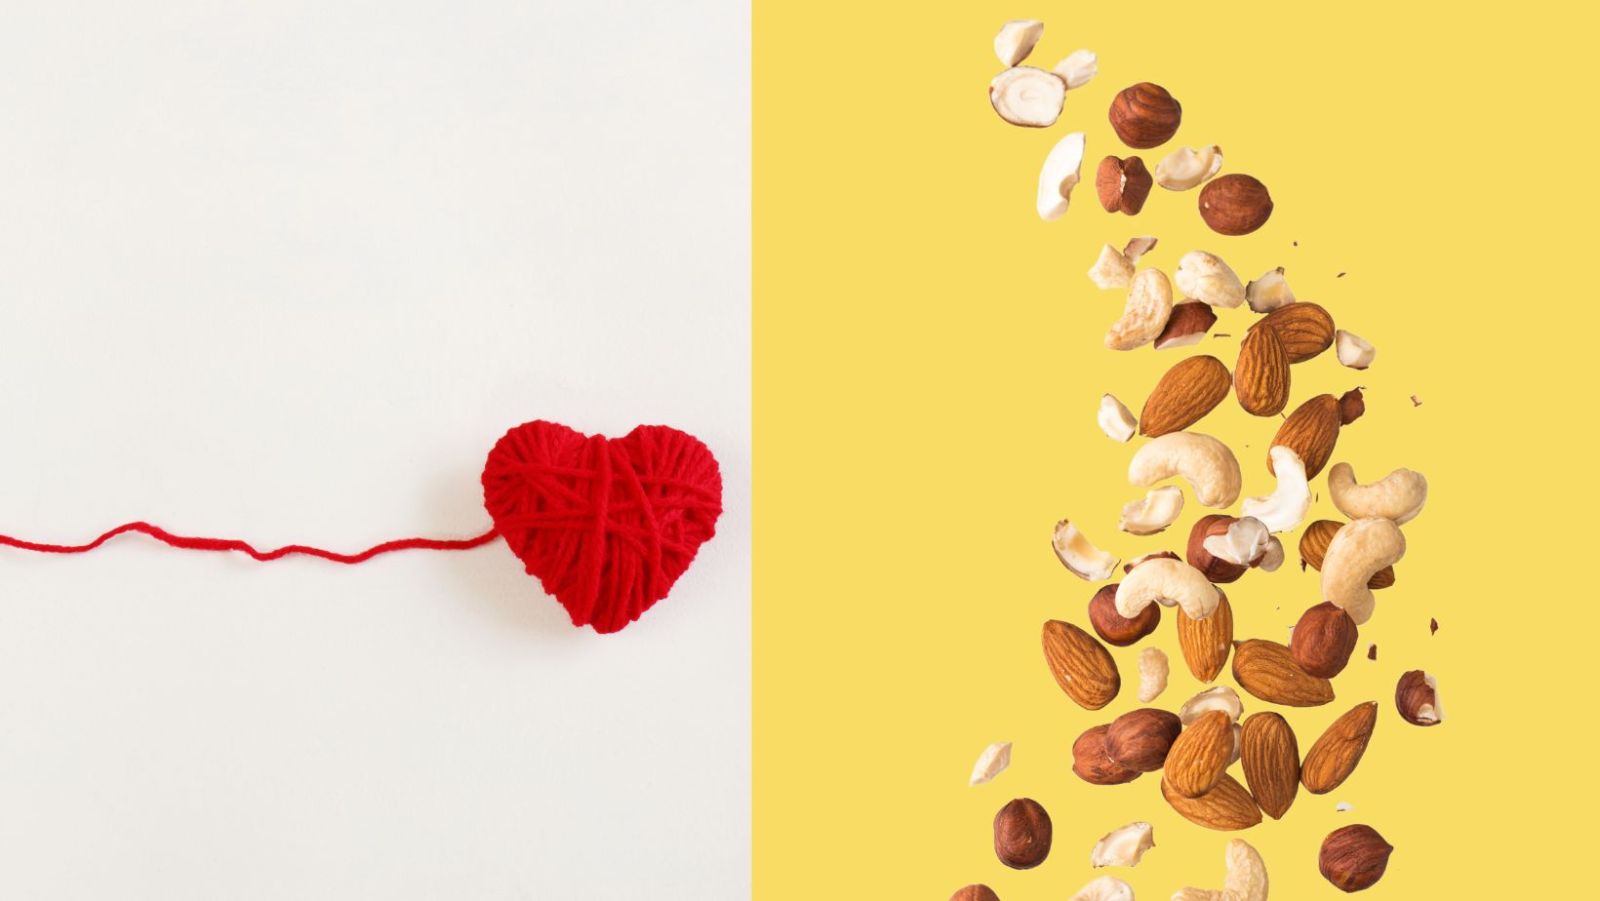 Manger des noix pourrait réduire de 61% le risque d'infarctus selon une étude